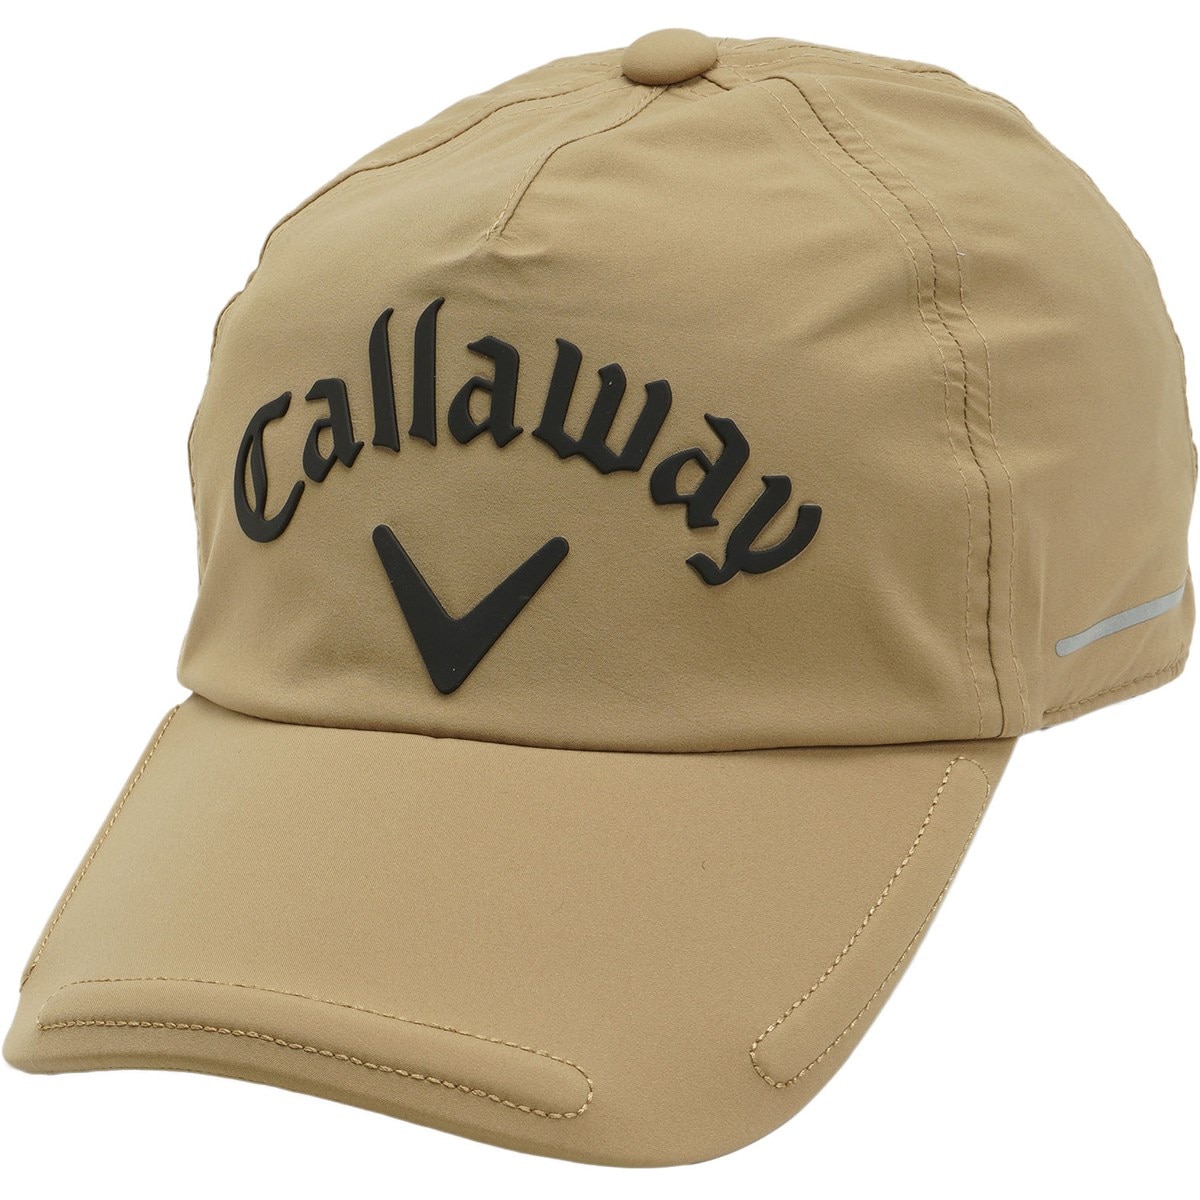 レインキャップ(レインウェア)|Callaway Golf(キャロウェイゴルフ)